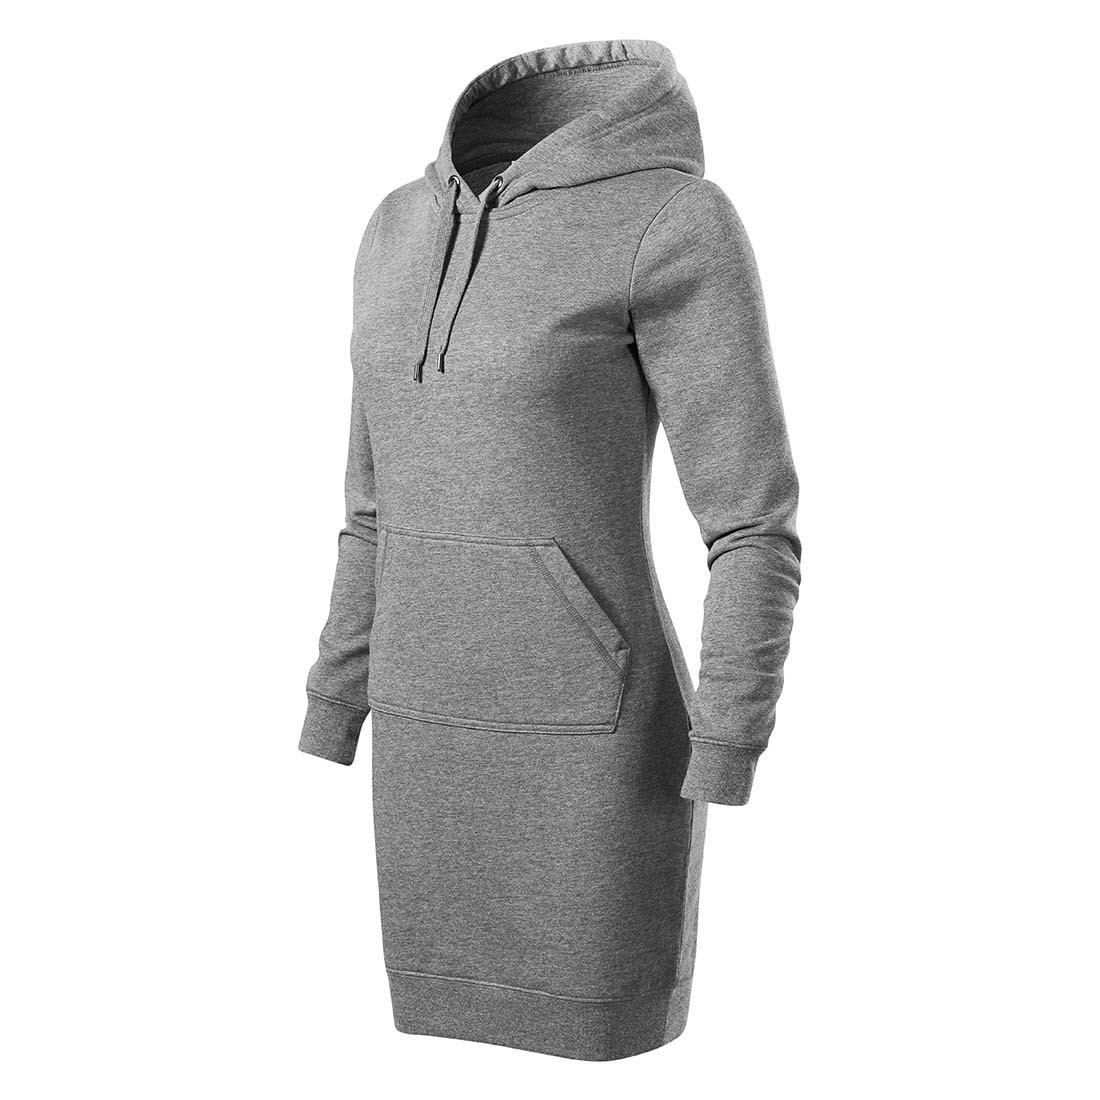 Robe femme à capuche SNAP - Les vêtements de protection